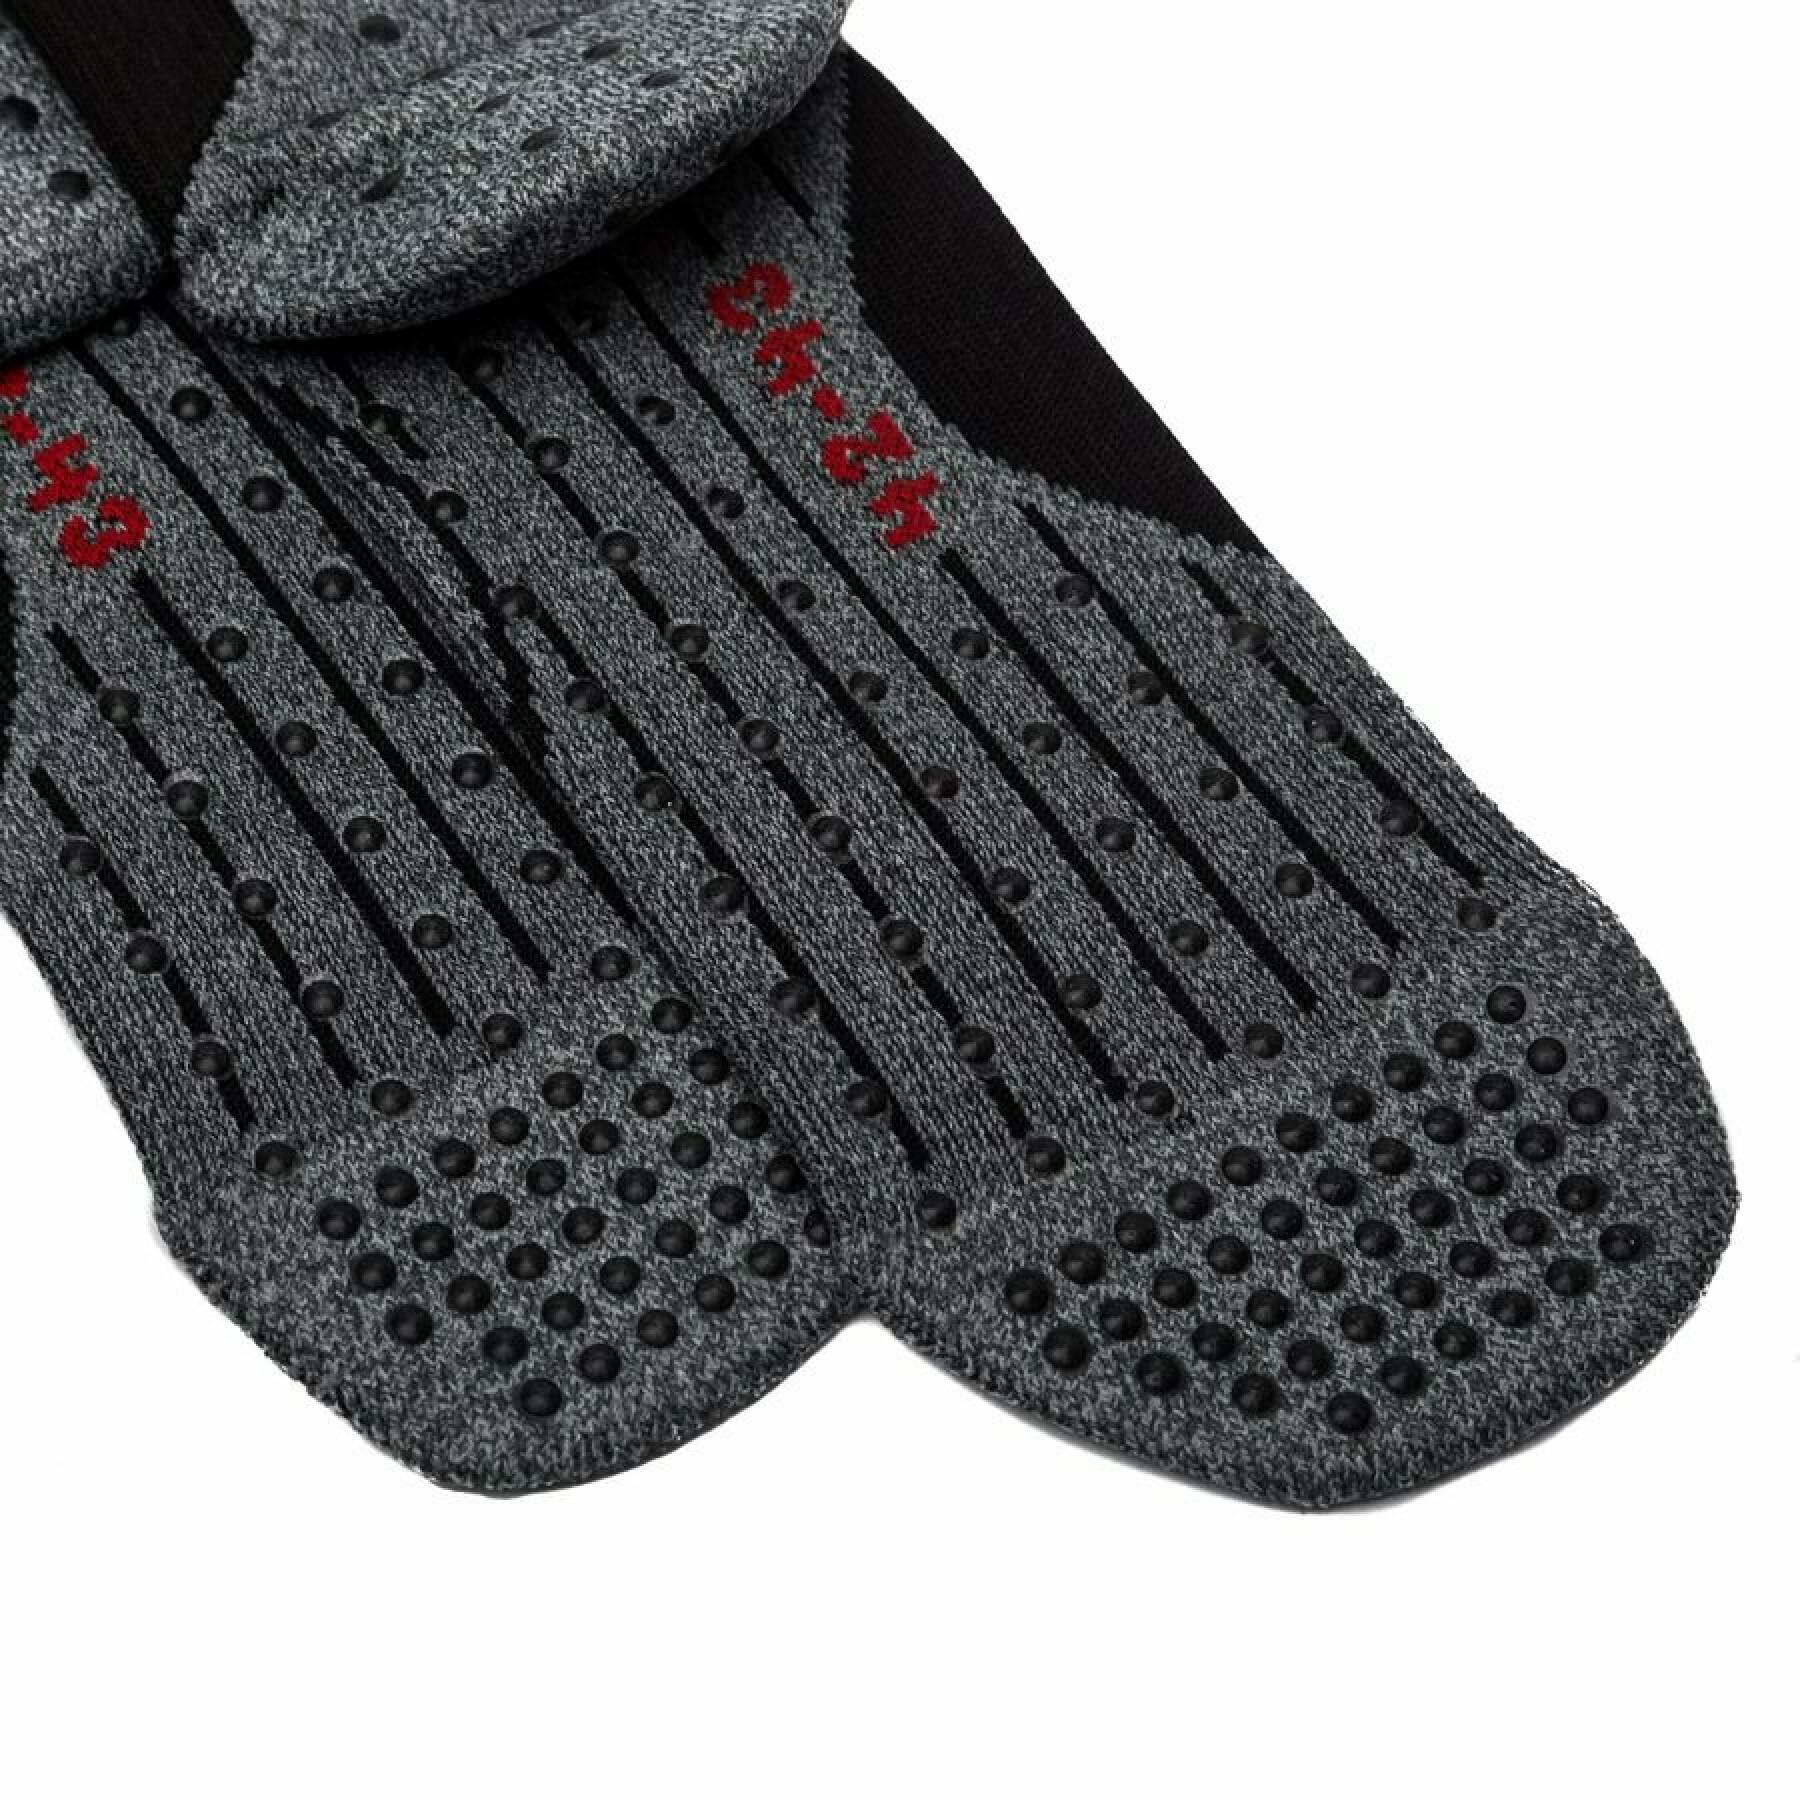 FALKE® 4 Grip socks for all sport disciplines